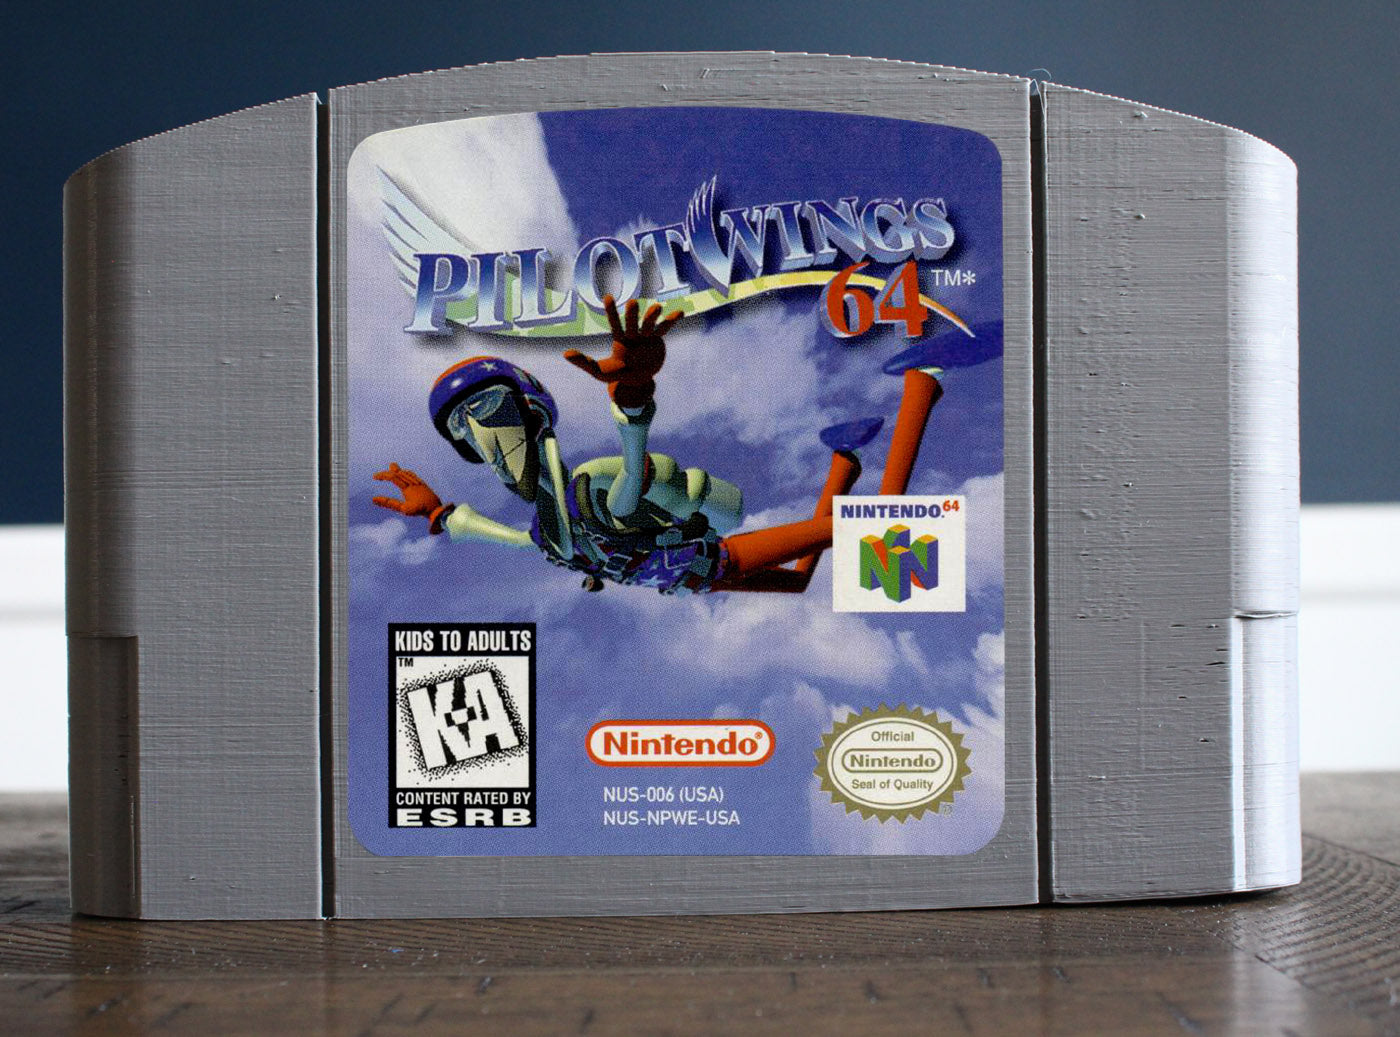 PilotWings 64 (N64)